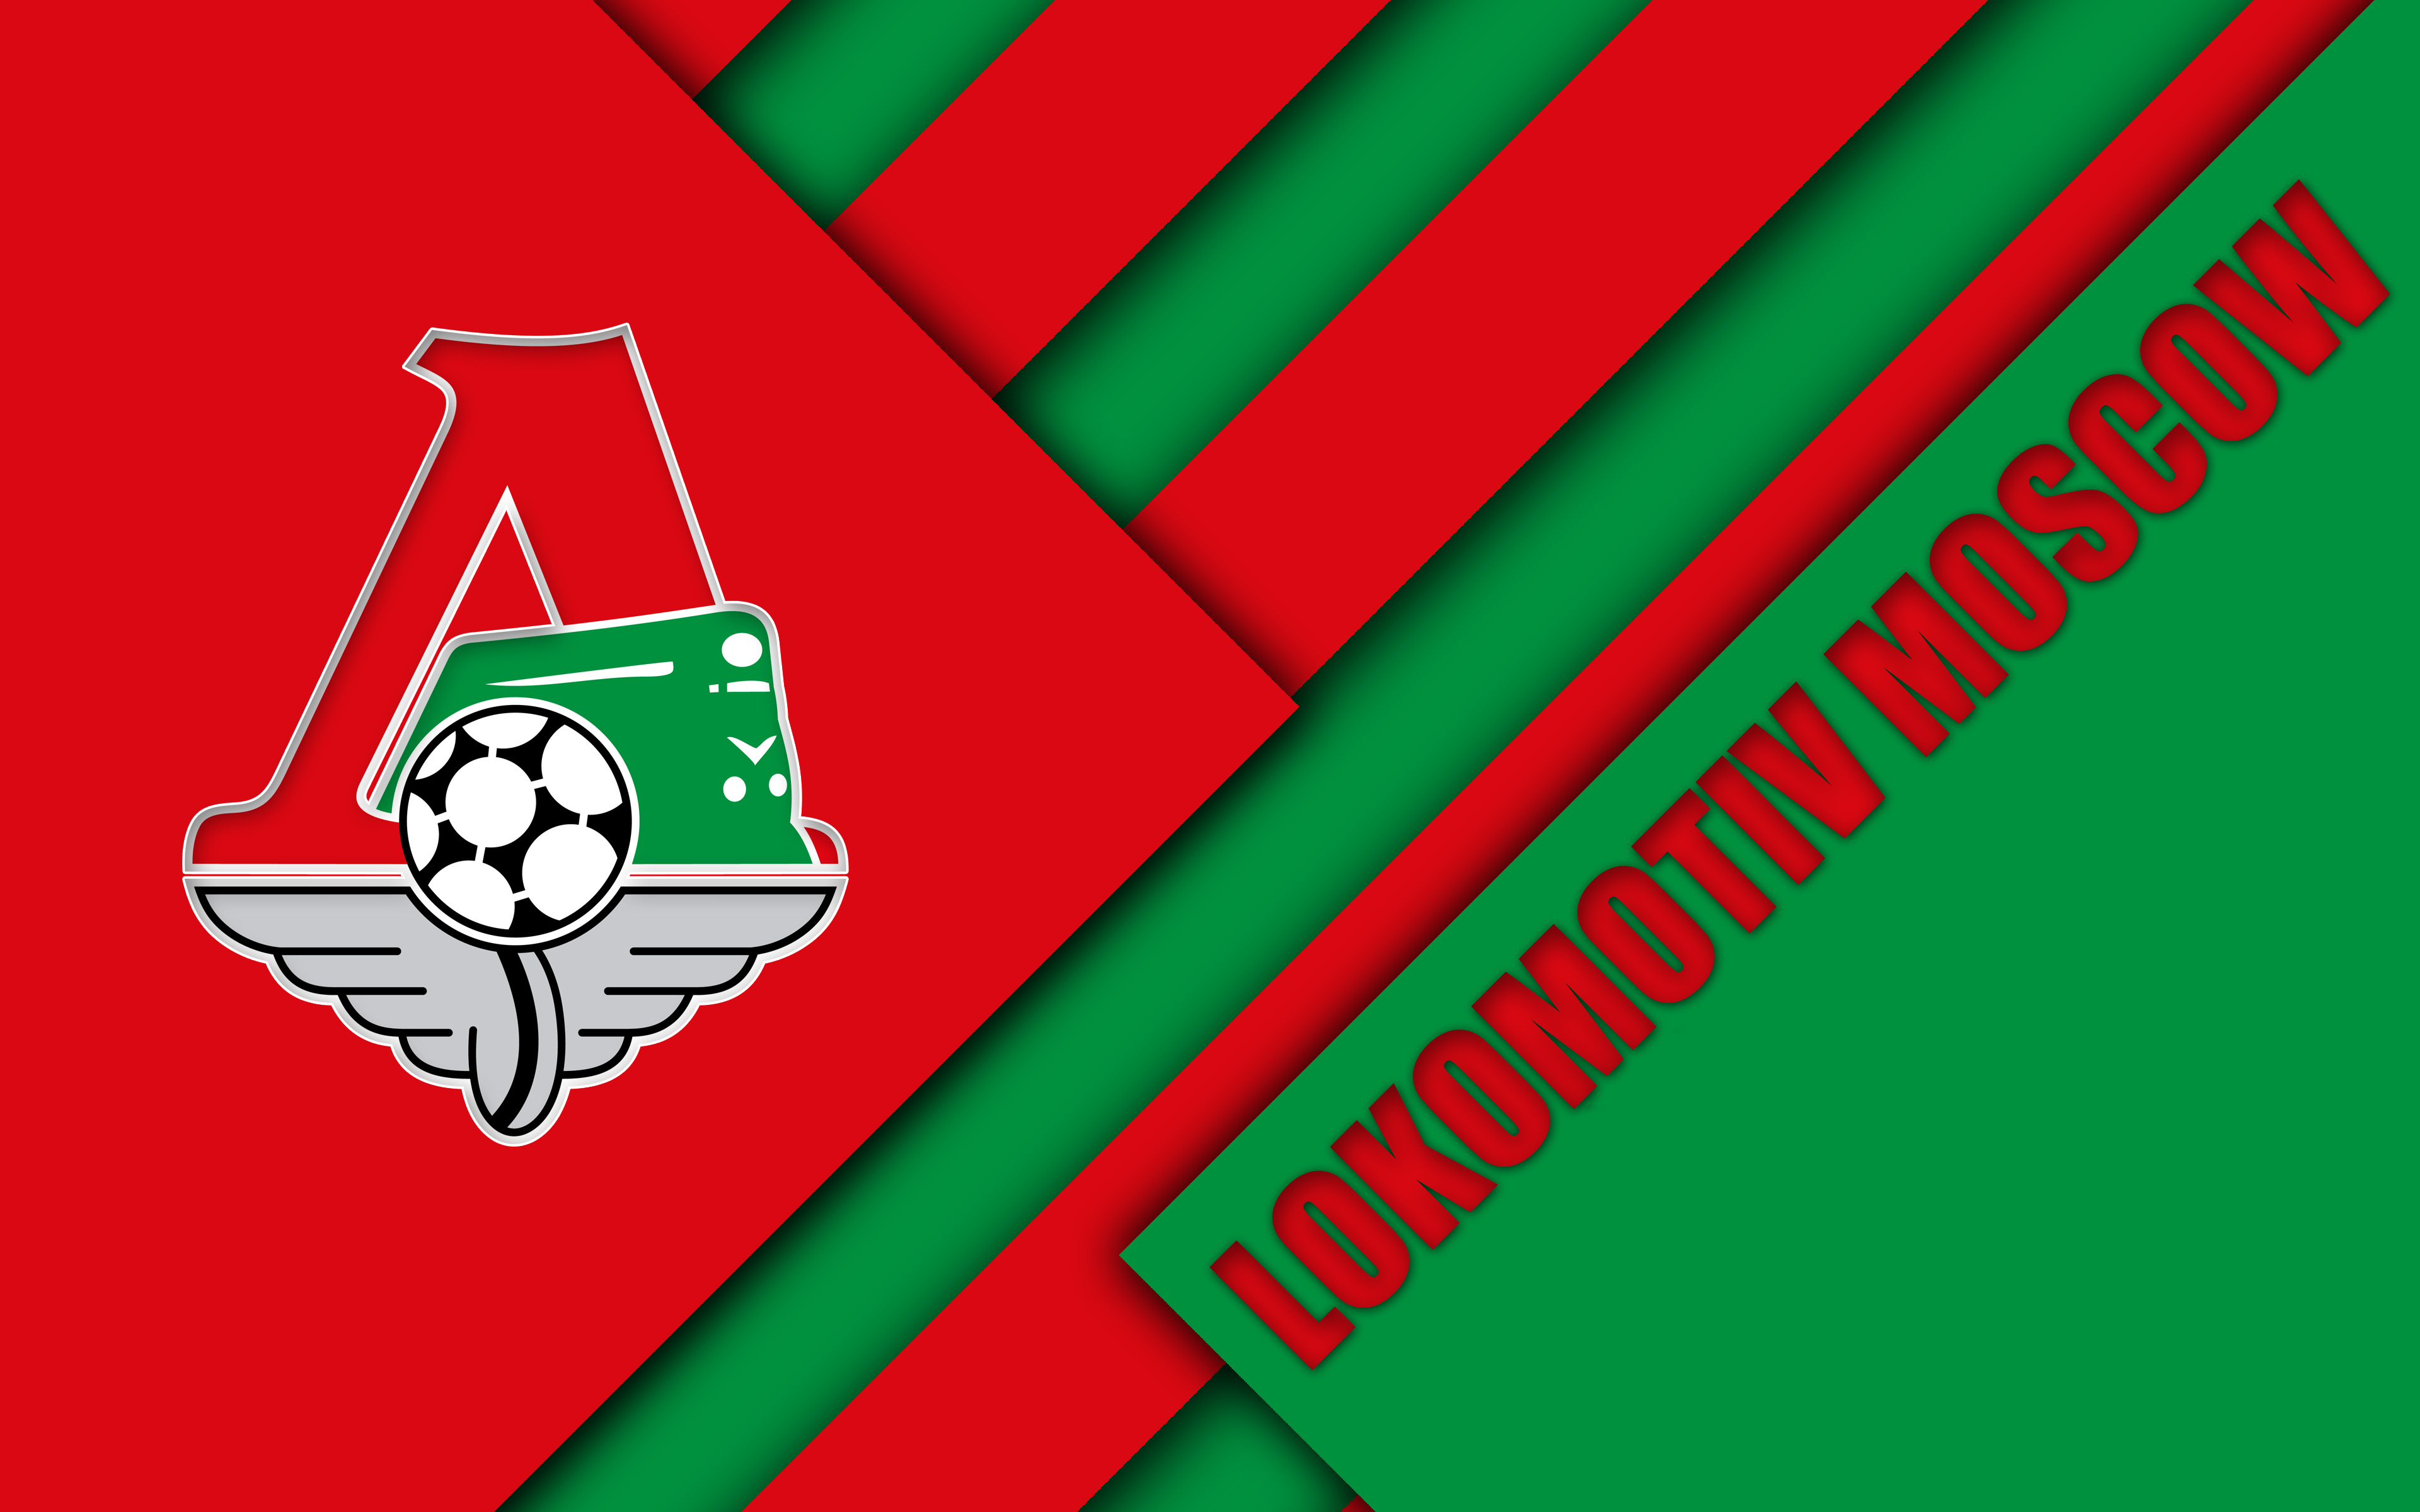 Emblem Fc Lokomotiv Moscow Logo Soccer 3840x2400